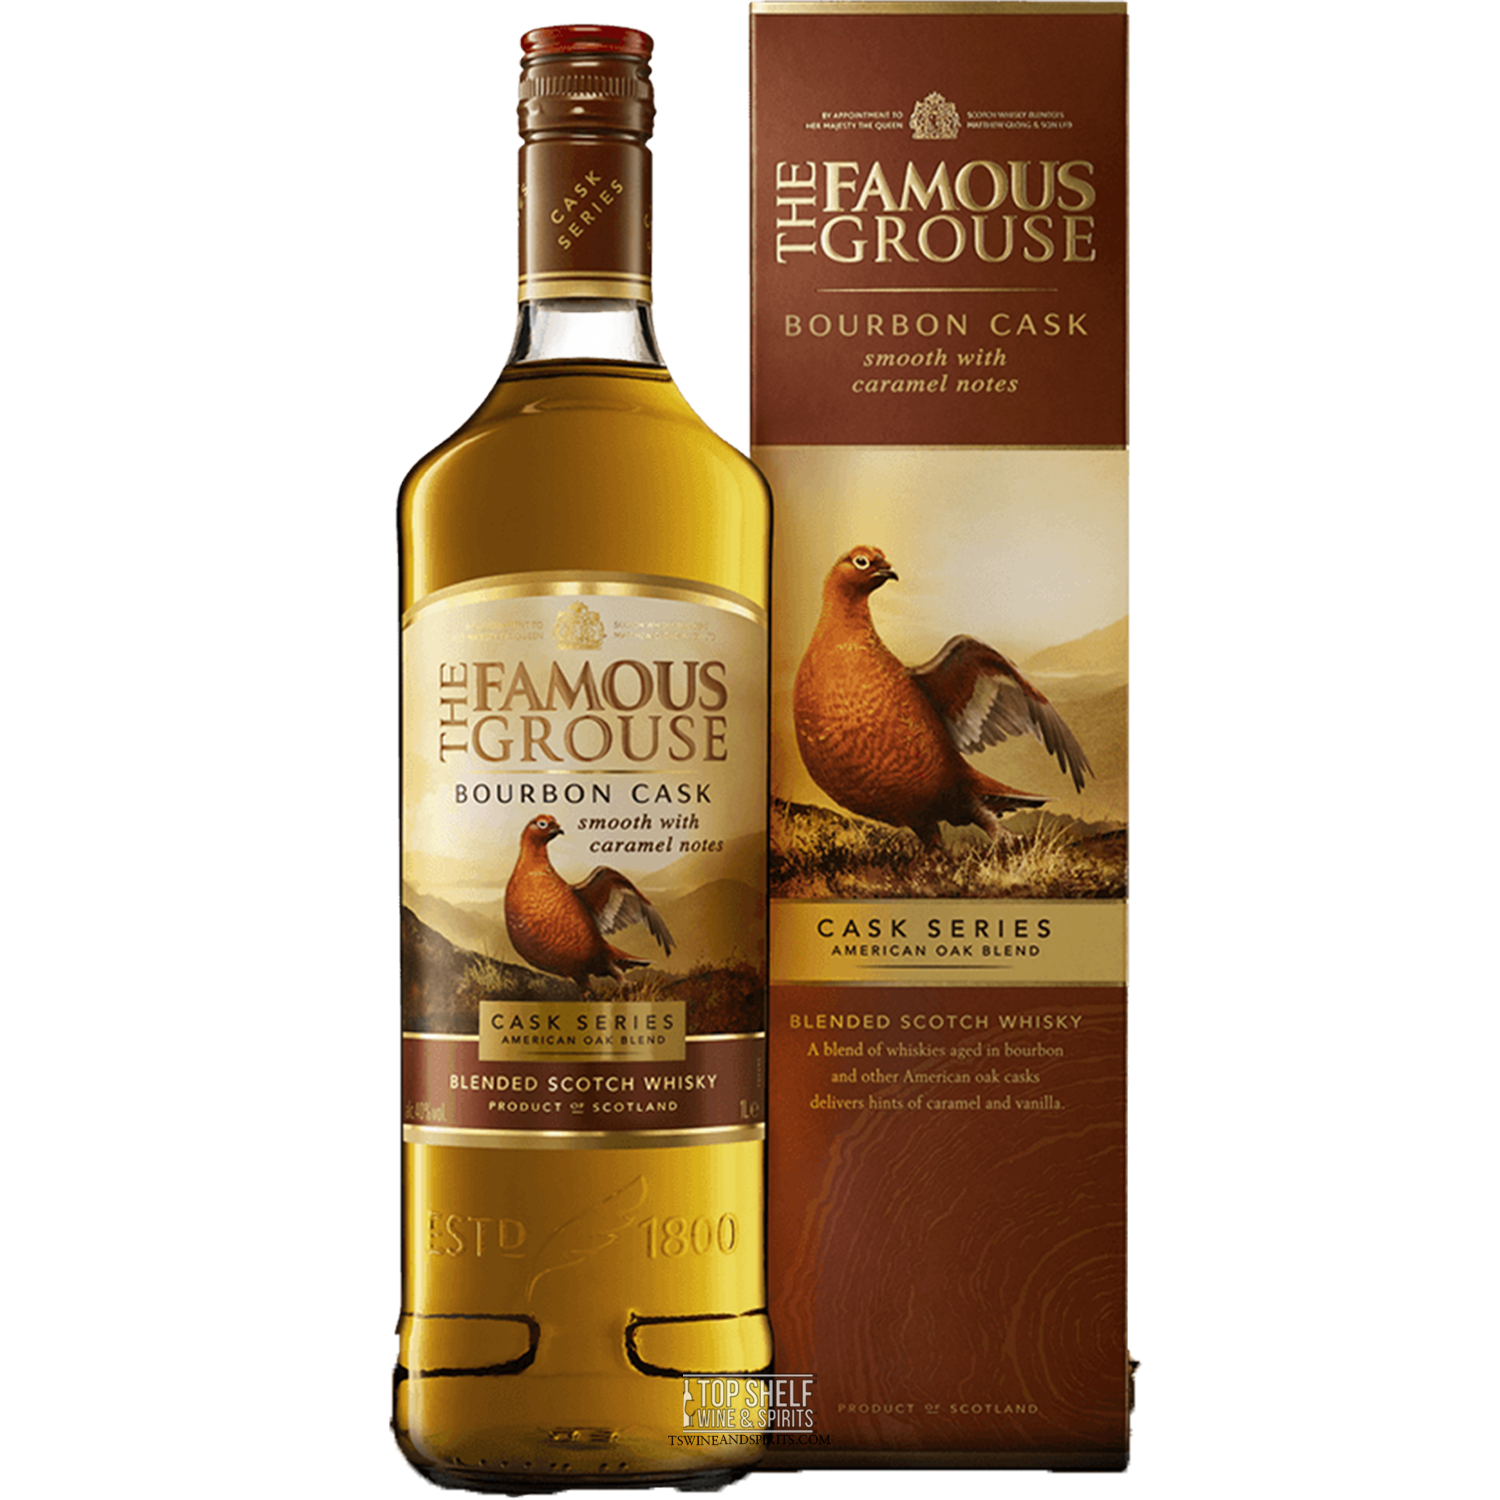 The Famous Grouse Bourbon Cask Series Scotch